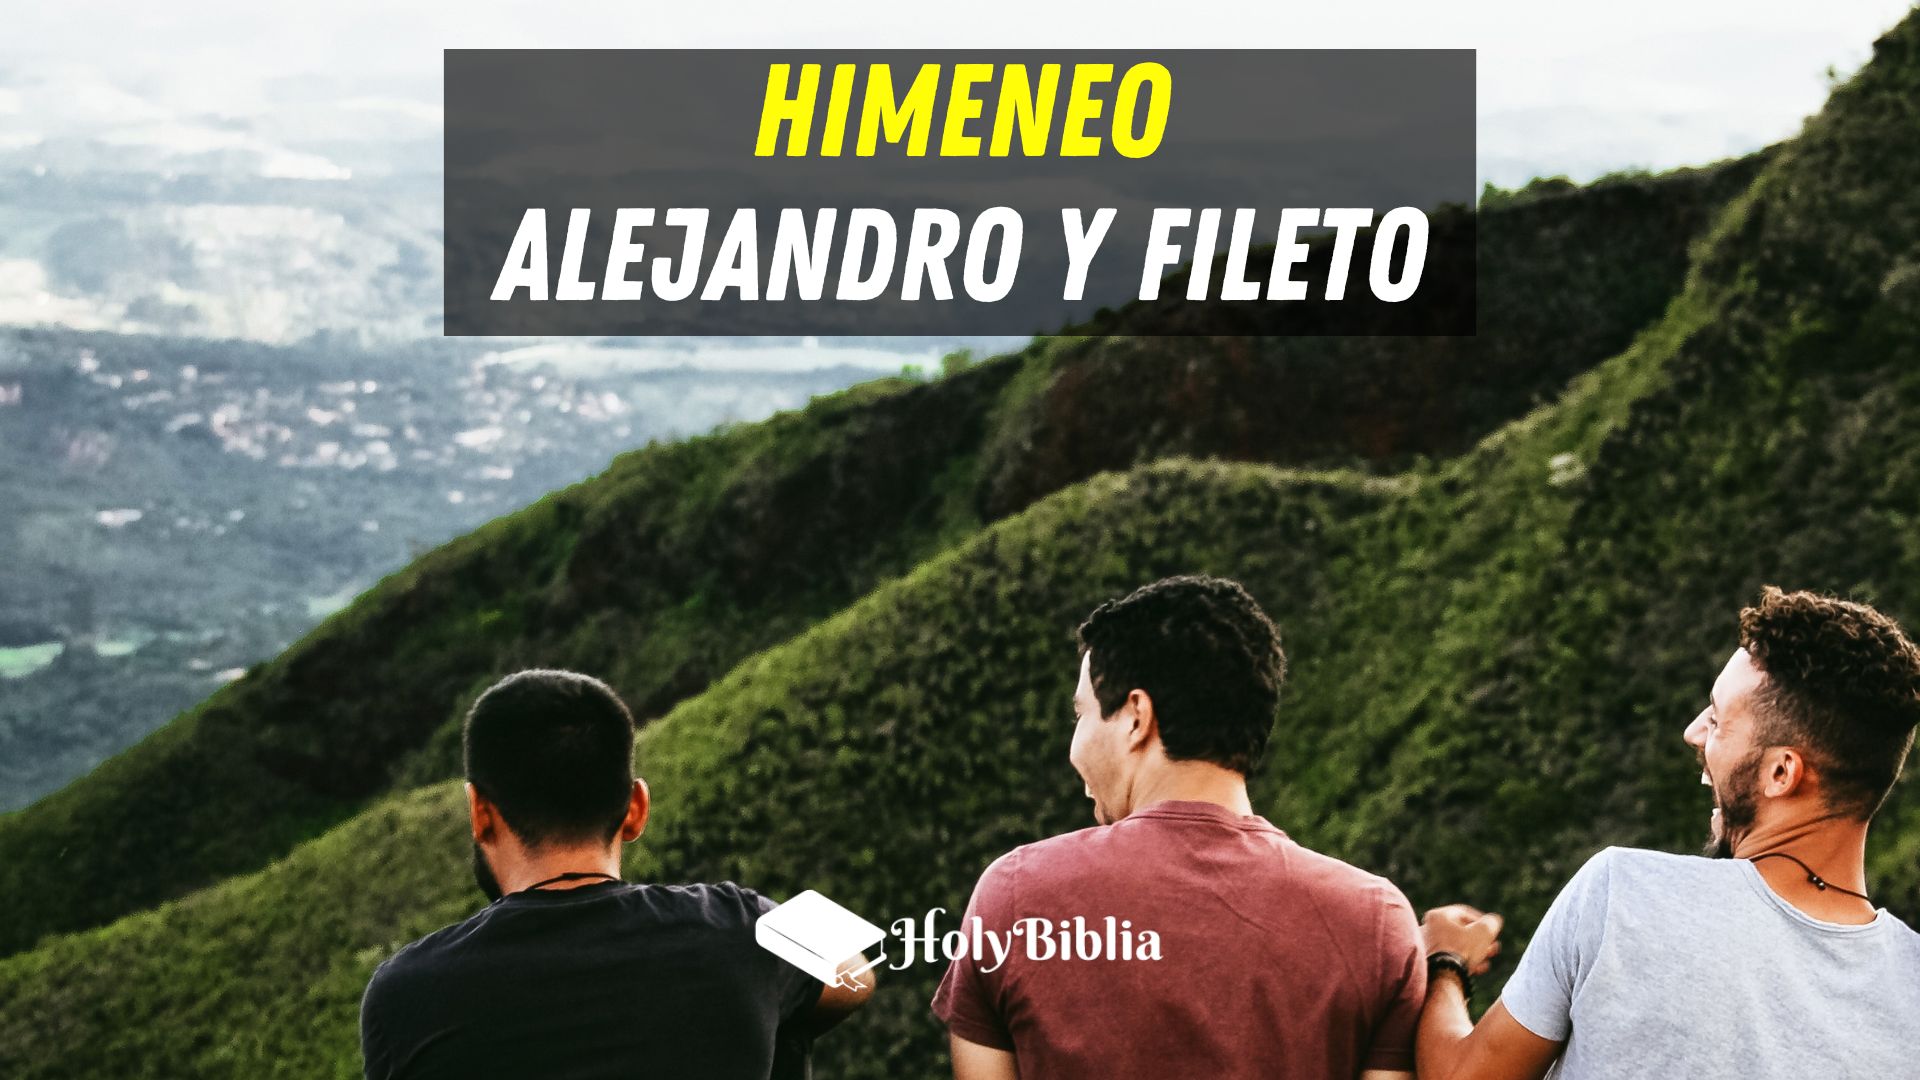 Quién fue Himeneo, Alejandro, Filetoen la Biblia